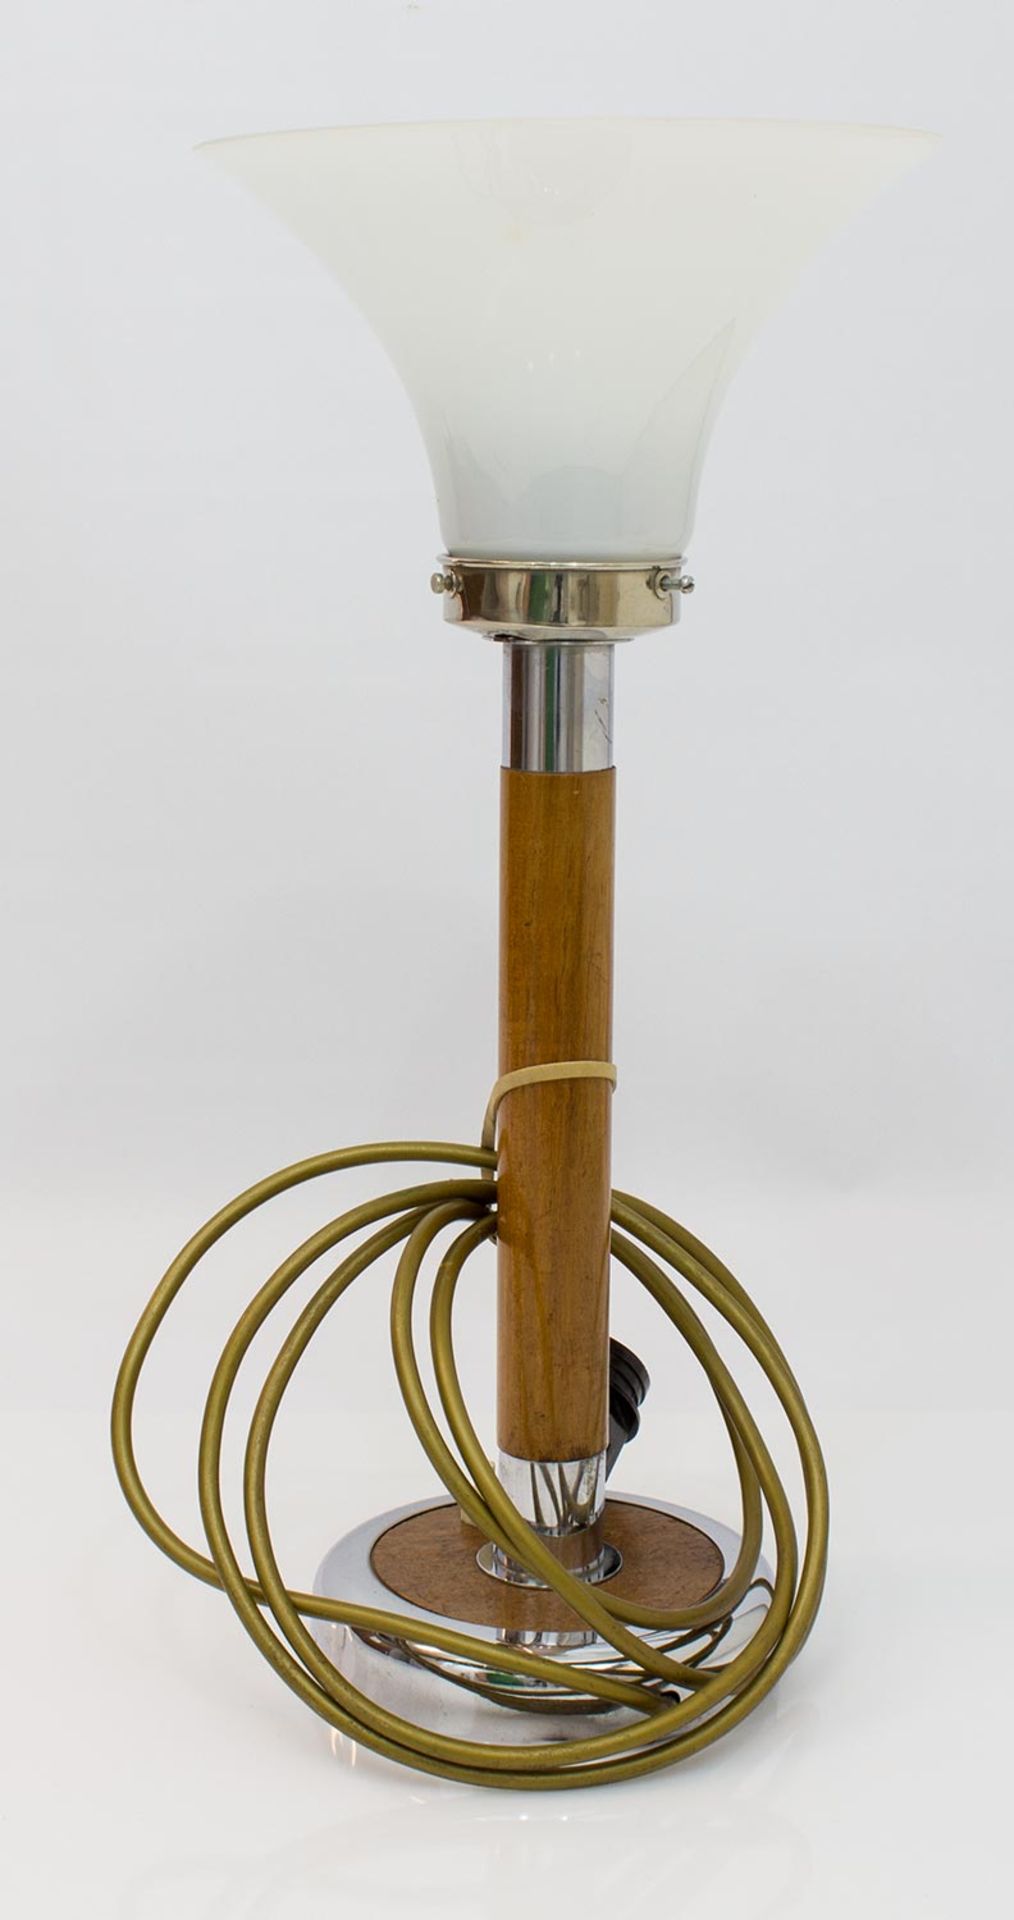 Tischlampe Mitte 20. Jh., Holzfuss u. Schaft mit verchromter Montierung, Milchglasschirm, H. 42 cm